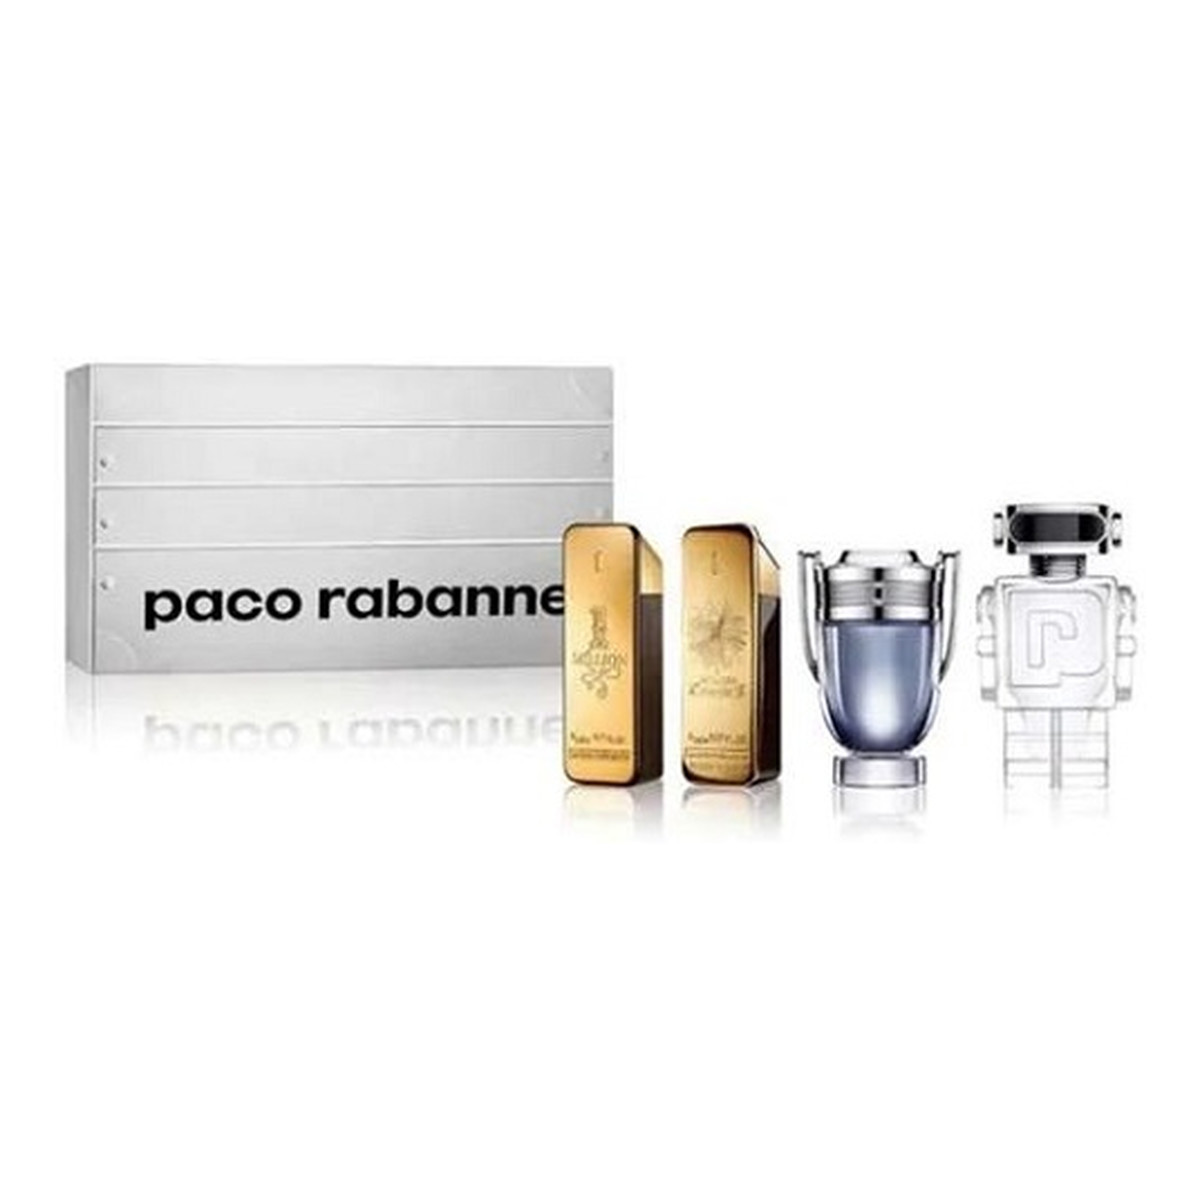 Paco Rabanne Travel Retail Exclusive Zestaw 1 million woda toaletowa 5ml + 1 million perfumy 5ml + invictus woda toaletowa 5ml + phantom woda toaletowa 5ml